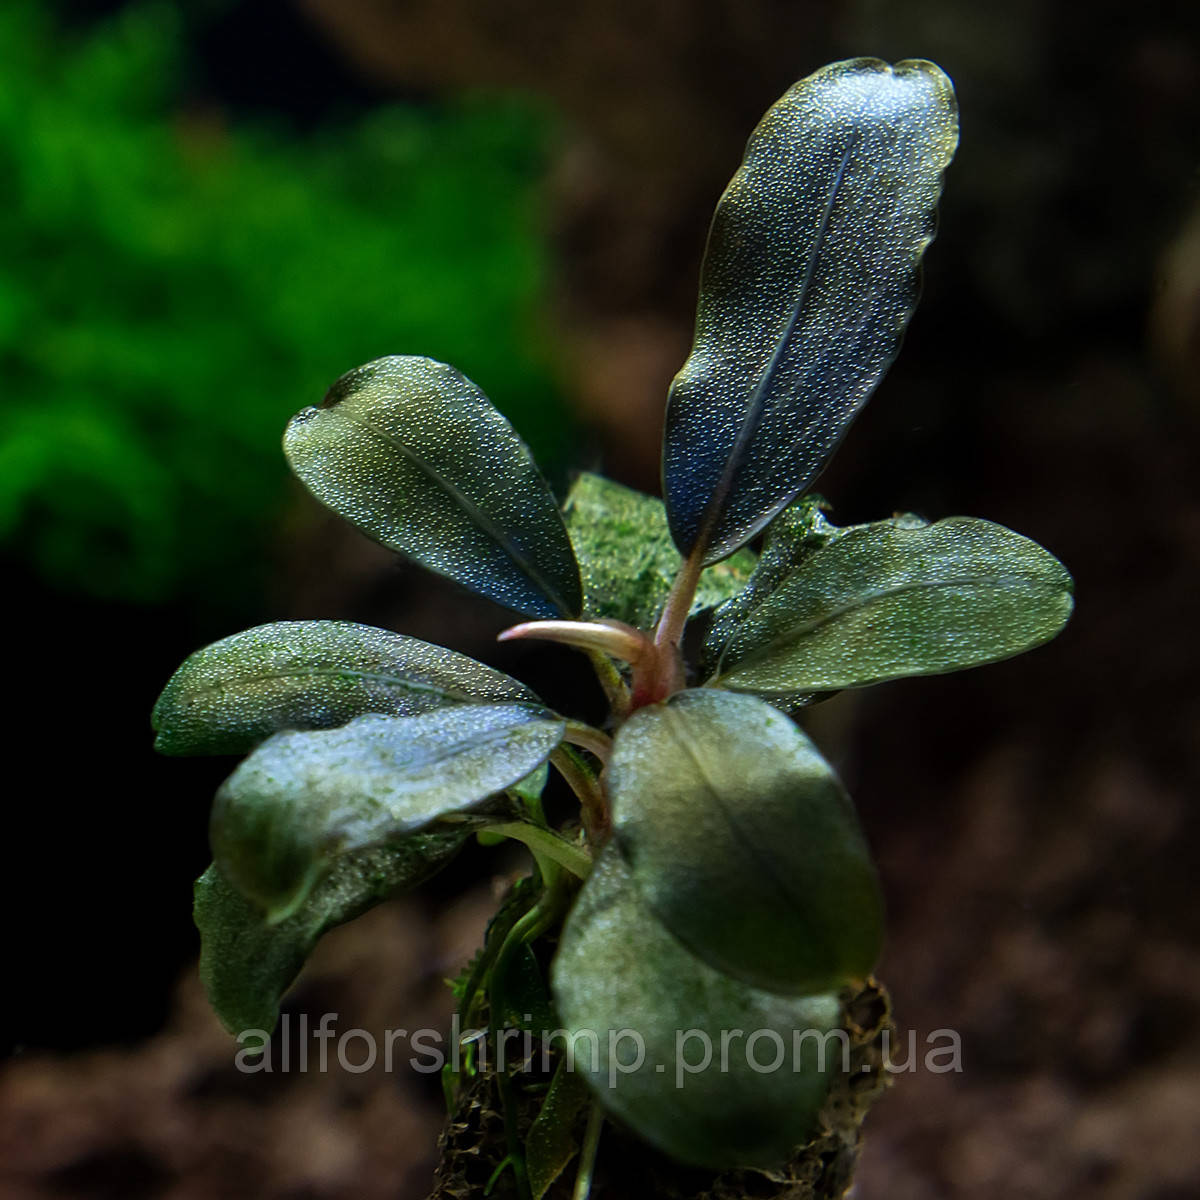 Буцефаландра / Bucephalandra sp. Aragon, отросток 5 листов.Нет в наличии